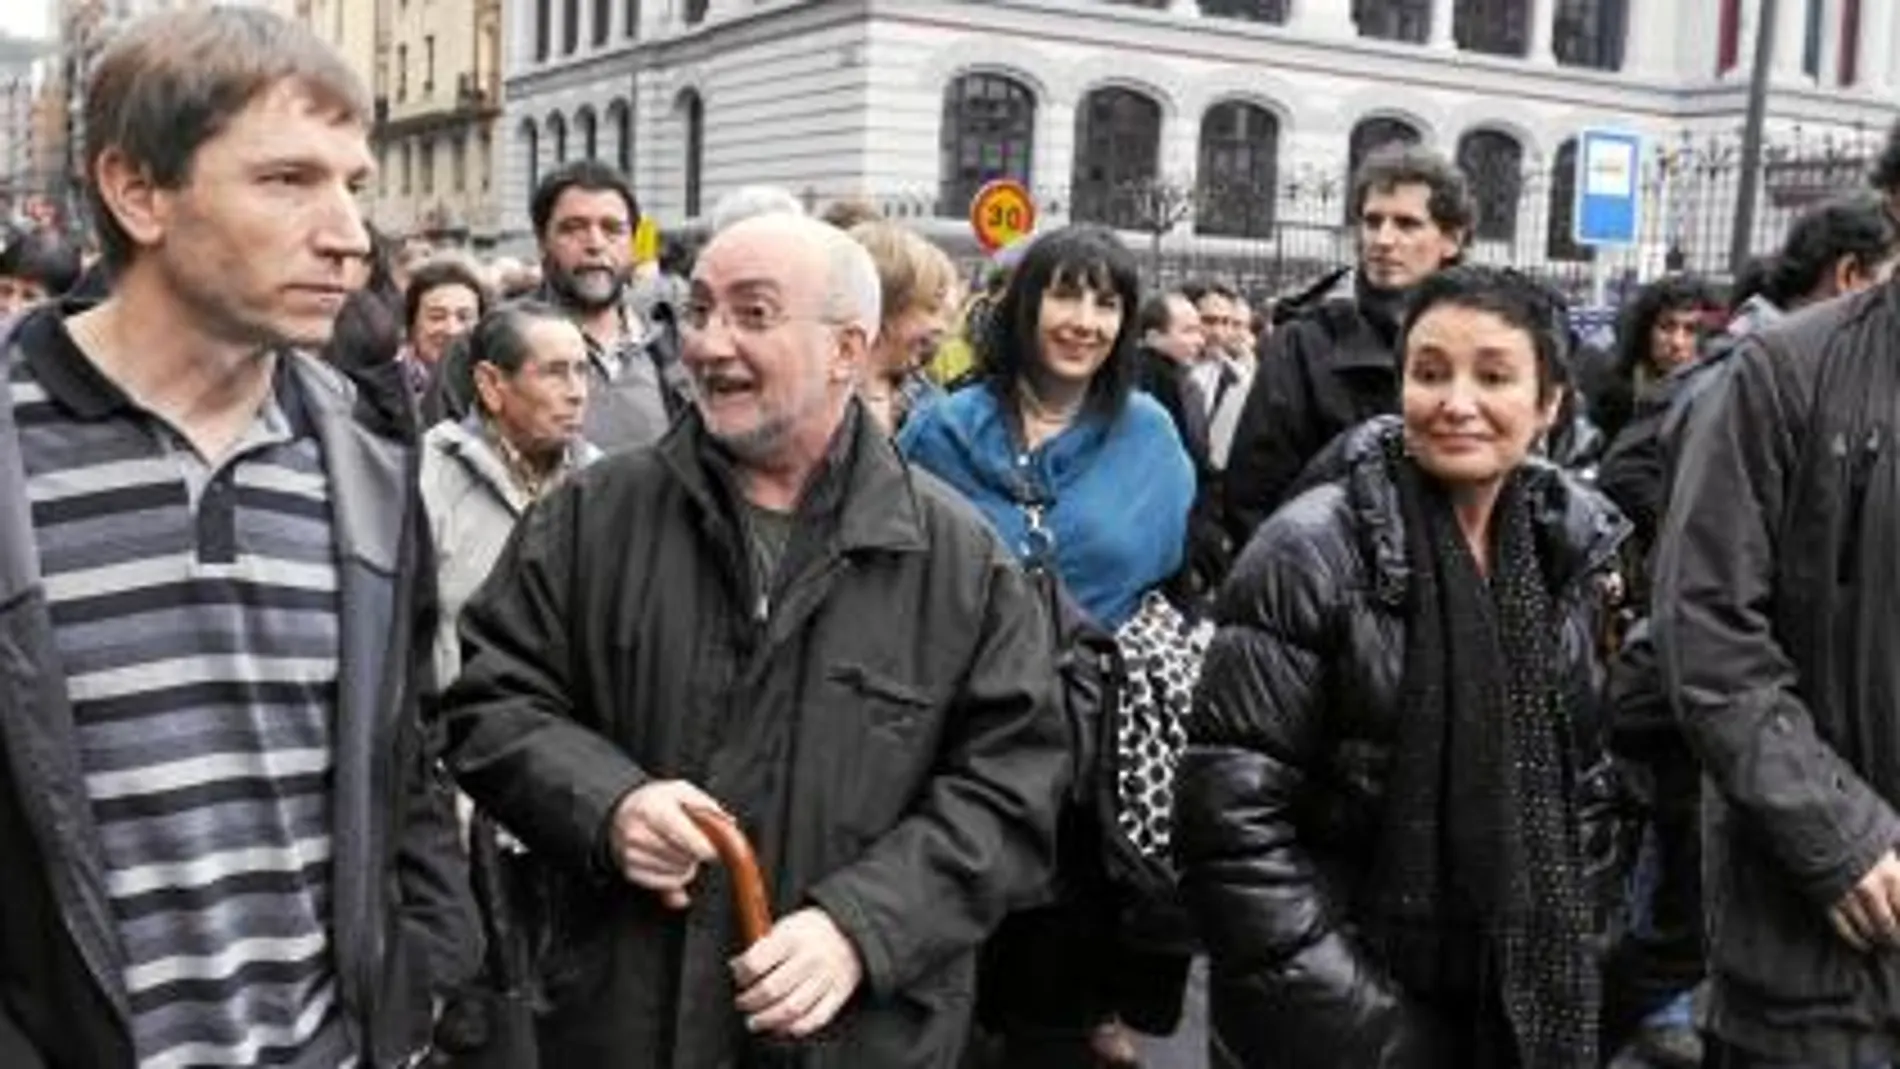 Rufi Etxeberria y dirigentes de EA salieron ayer juntos en Bilbao a manifestarse para pedir la legalización de Sortu